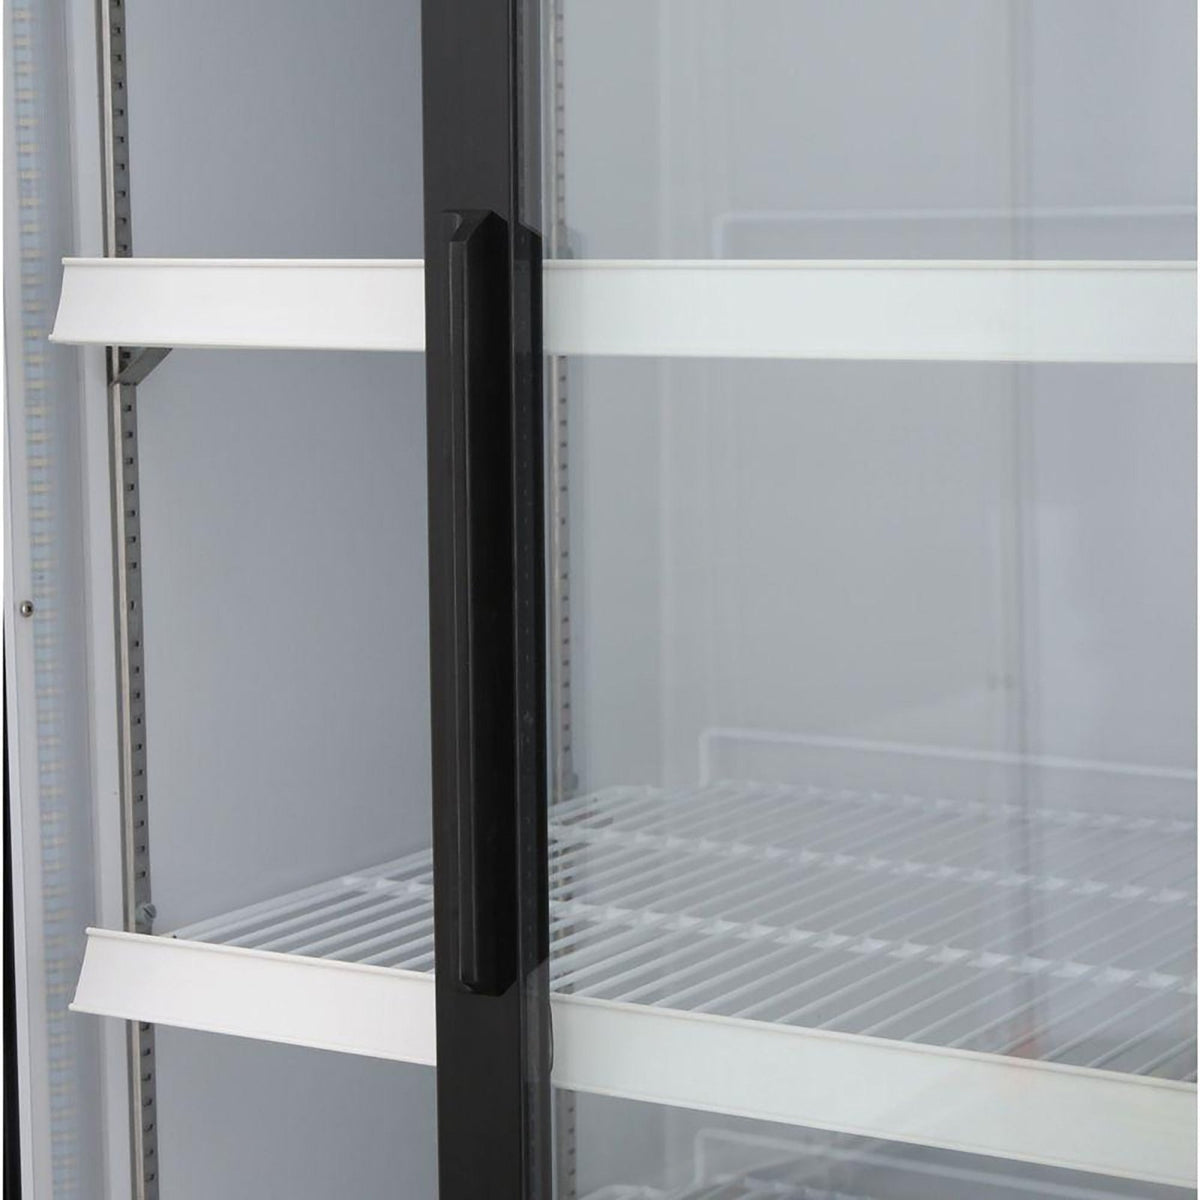 Maxx Cold MXM2 - 48RSBHC Double Glass Door Merchandiser Refrigerator, Sliding Door, 54"W, 48 cu. ft. Storage Capacity, in Black - TheChefStore.Com